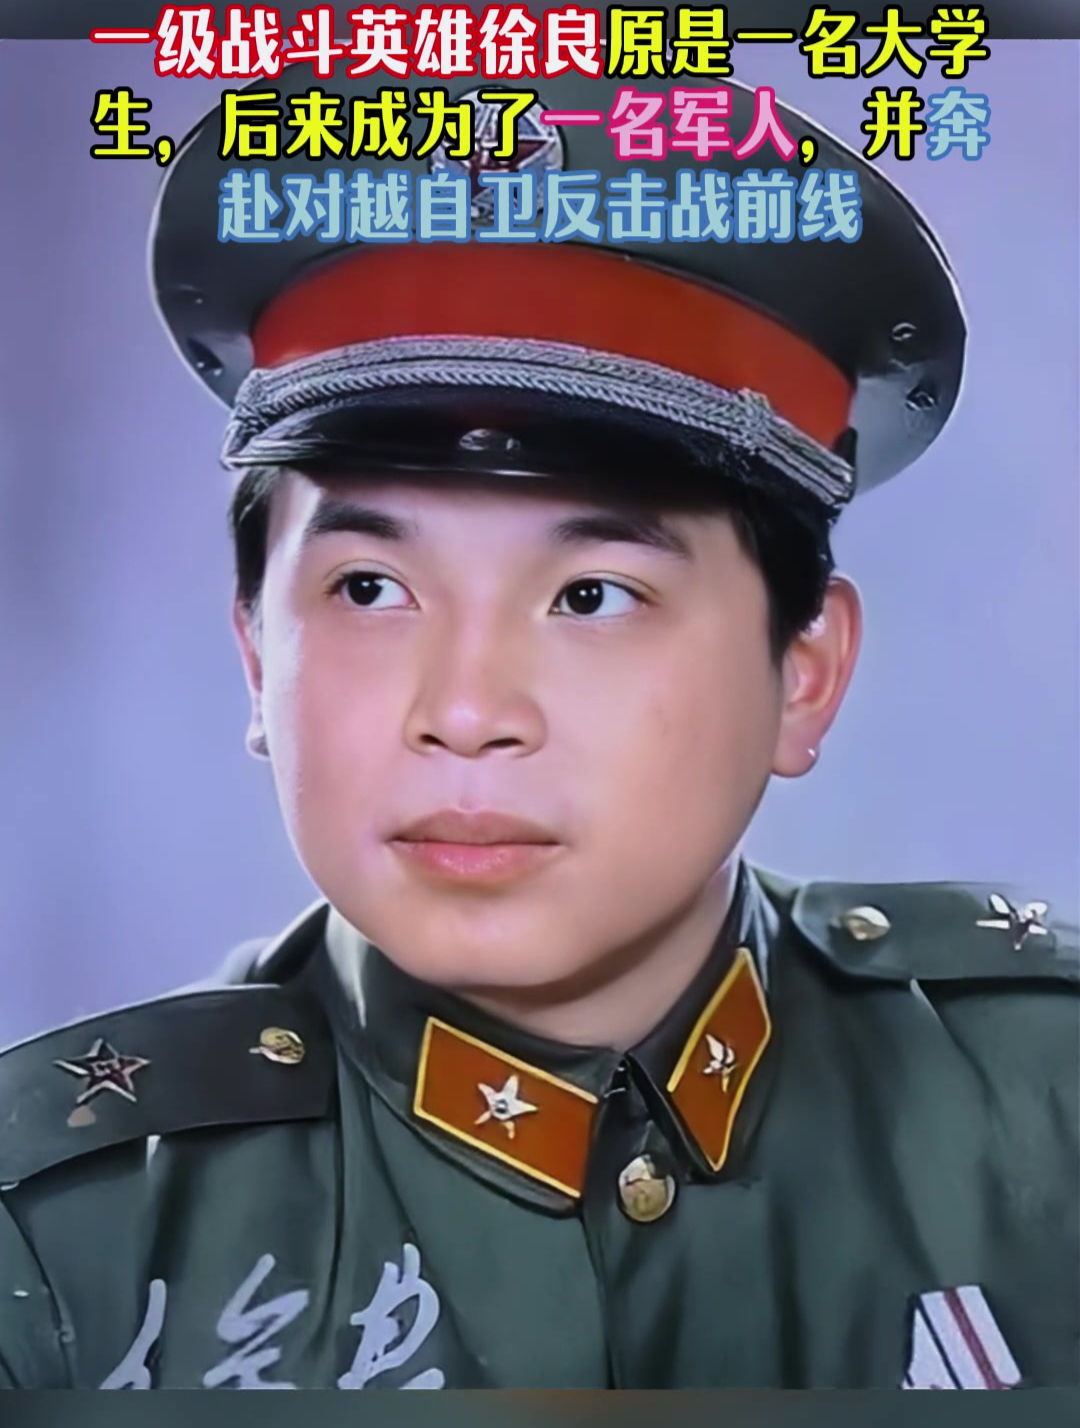 一级战斗英雄徐良原是一名大学生,后来成为一名军人奔赴战场